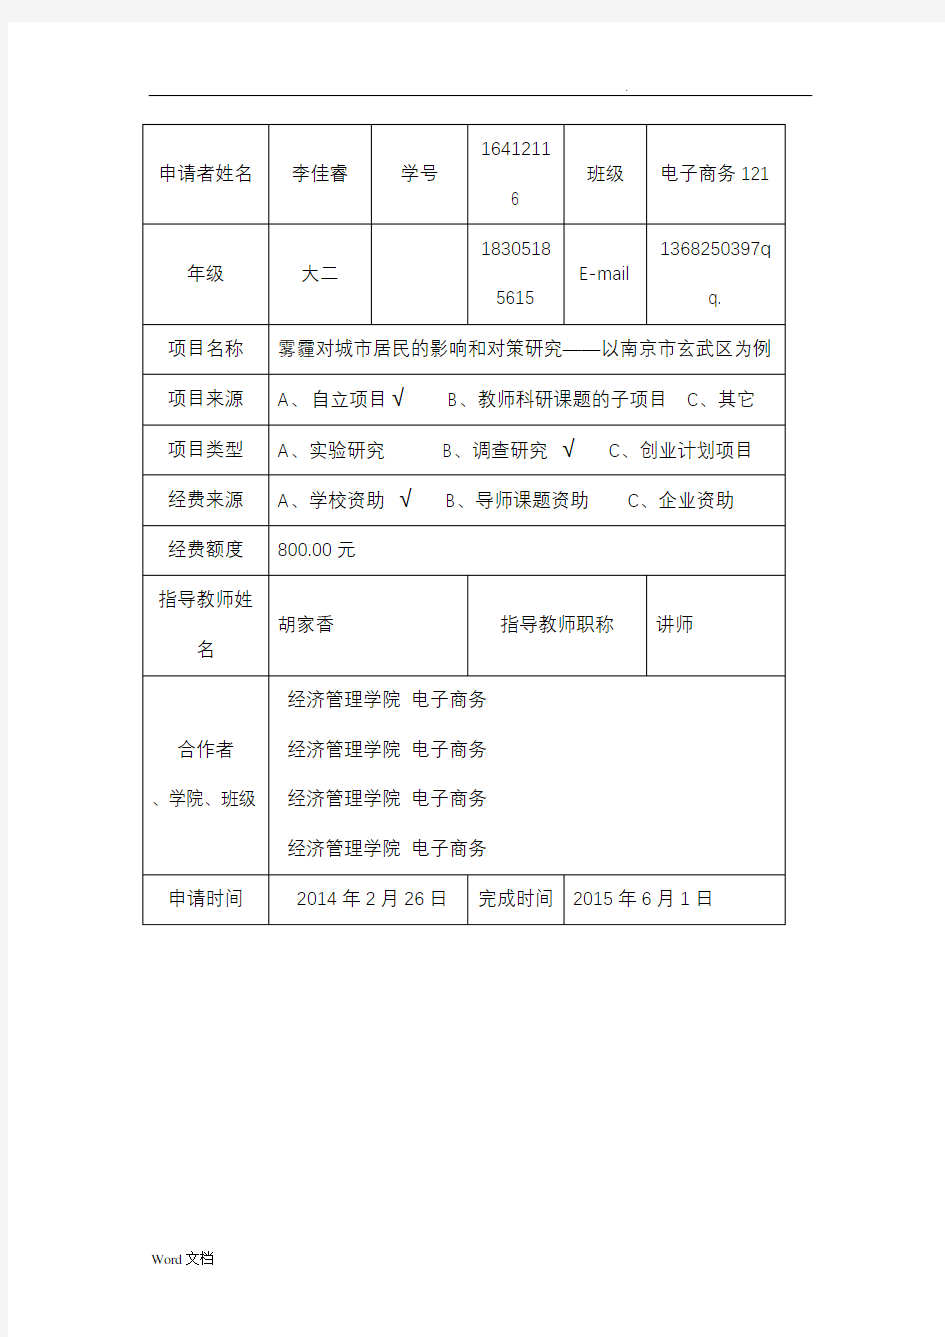 南京农业大学SRT计划项目申请书